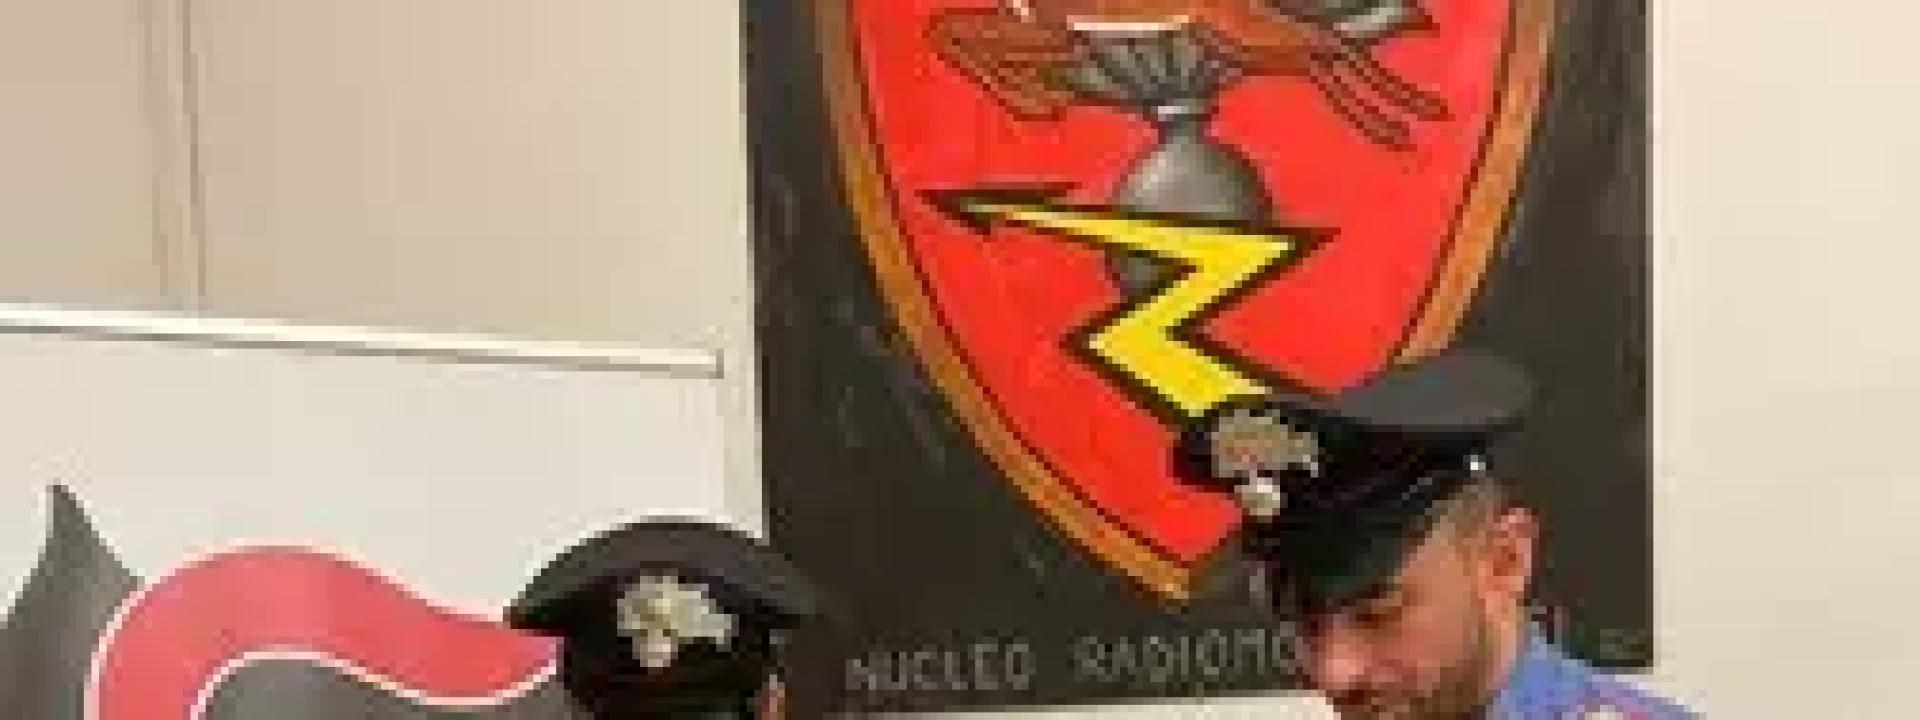 Marche - Scappano dai carabinieri e cercano di speronare l'auto di servizio: arrestati due albanesi